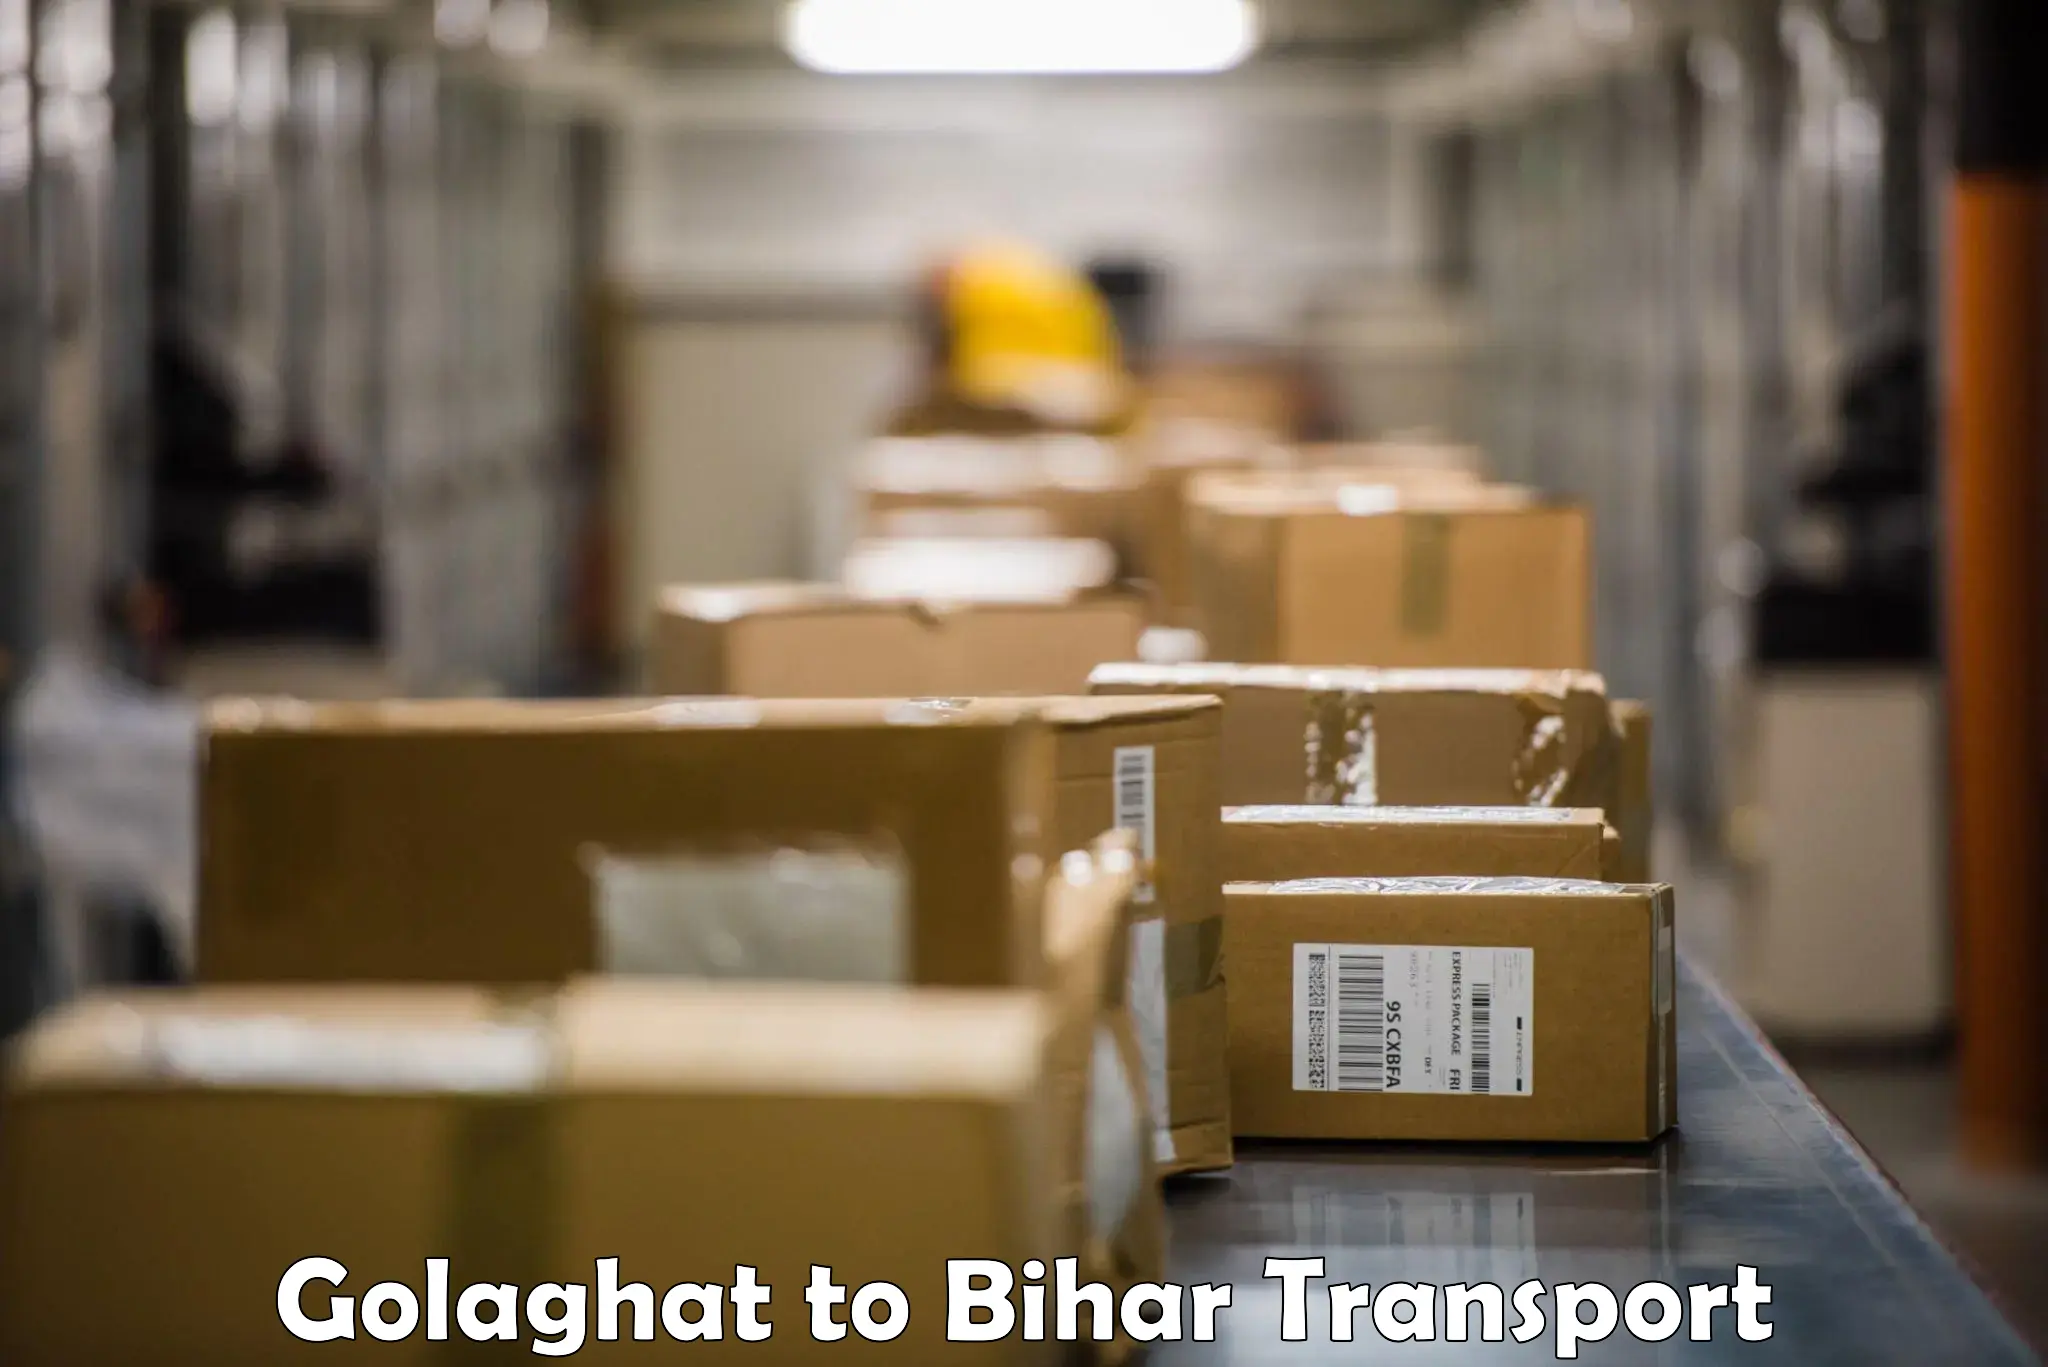 Nearest transport service Golaghat to Muzaffarpur